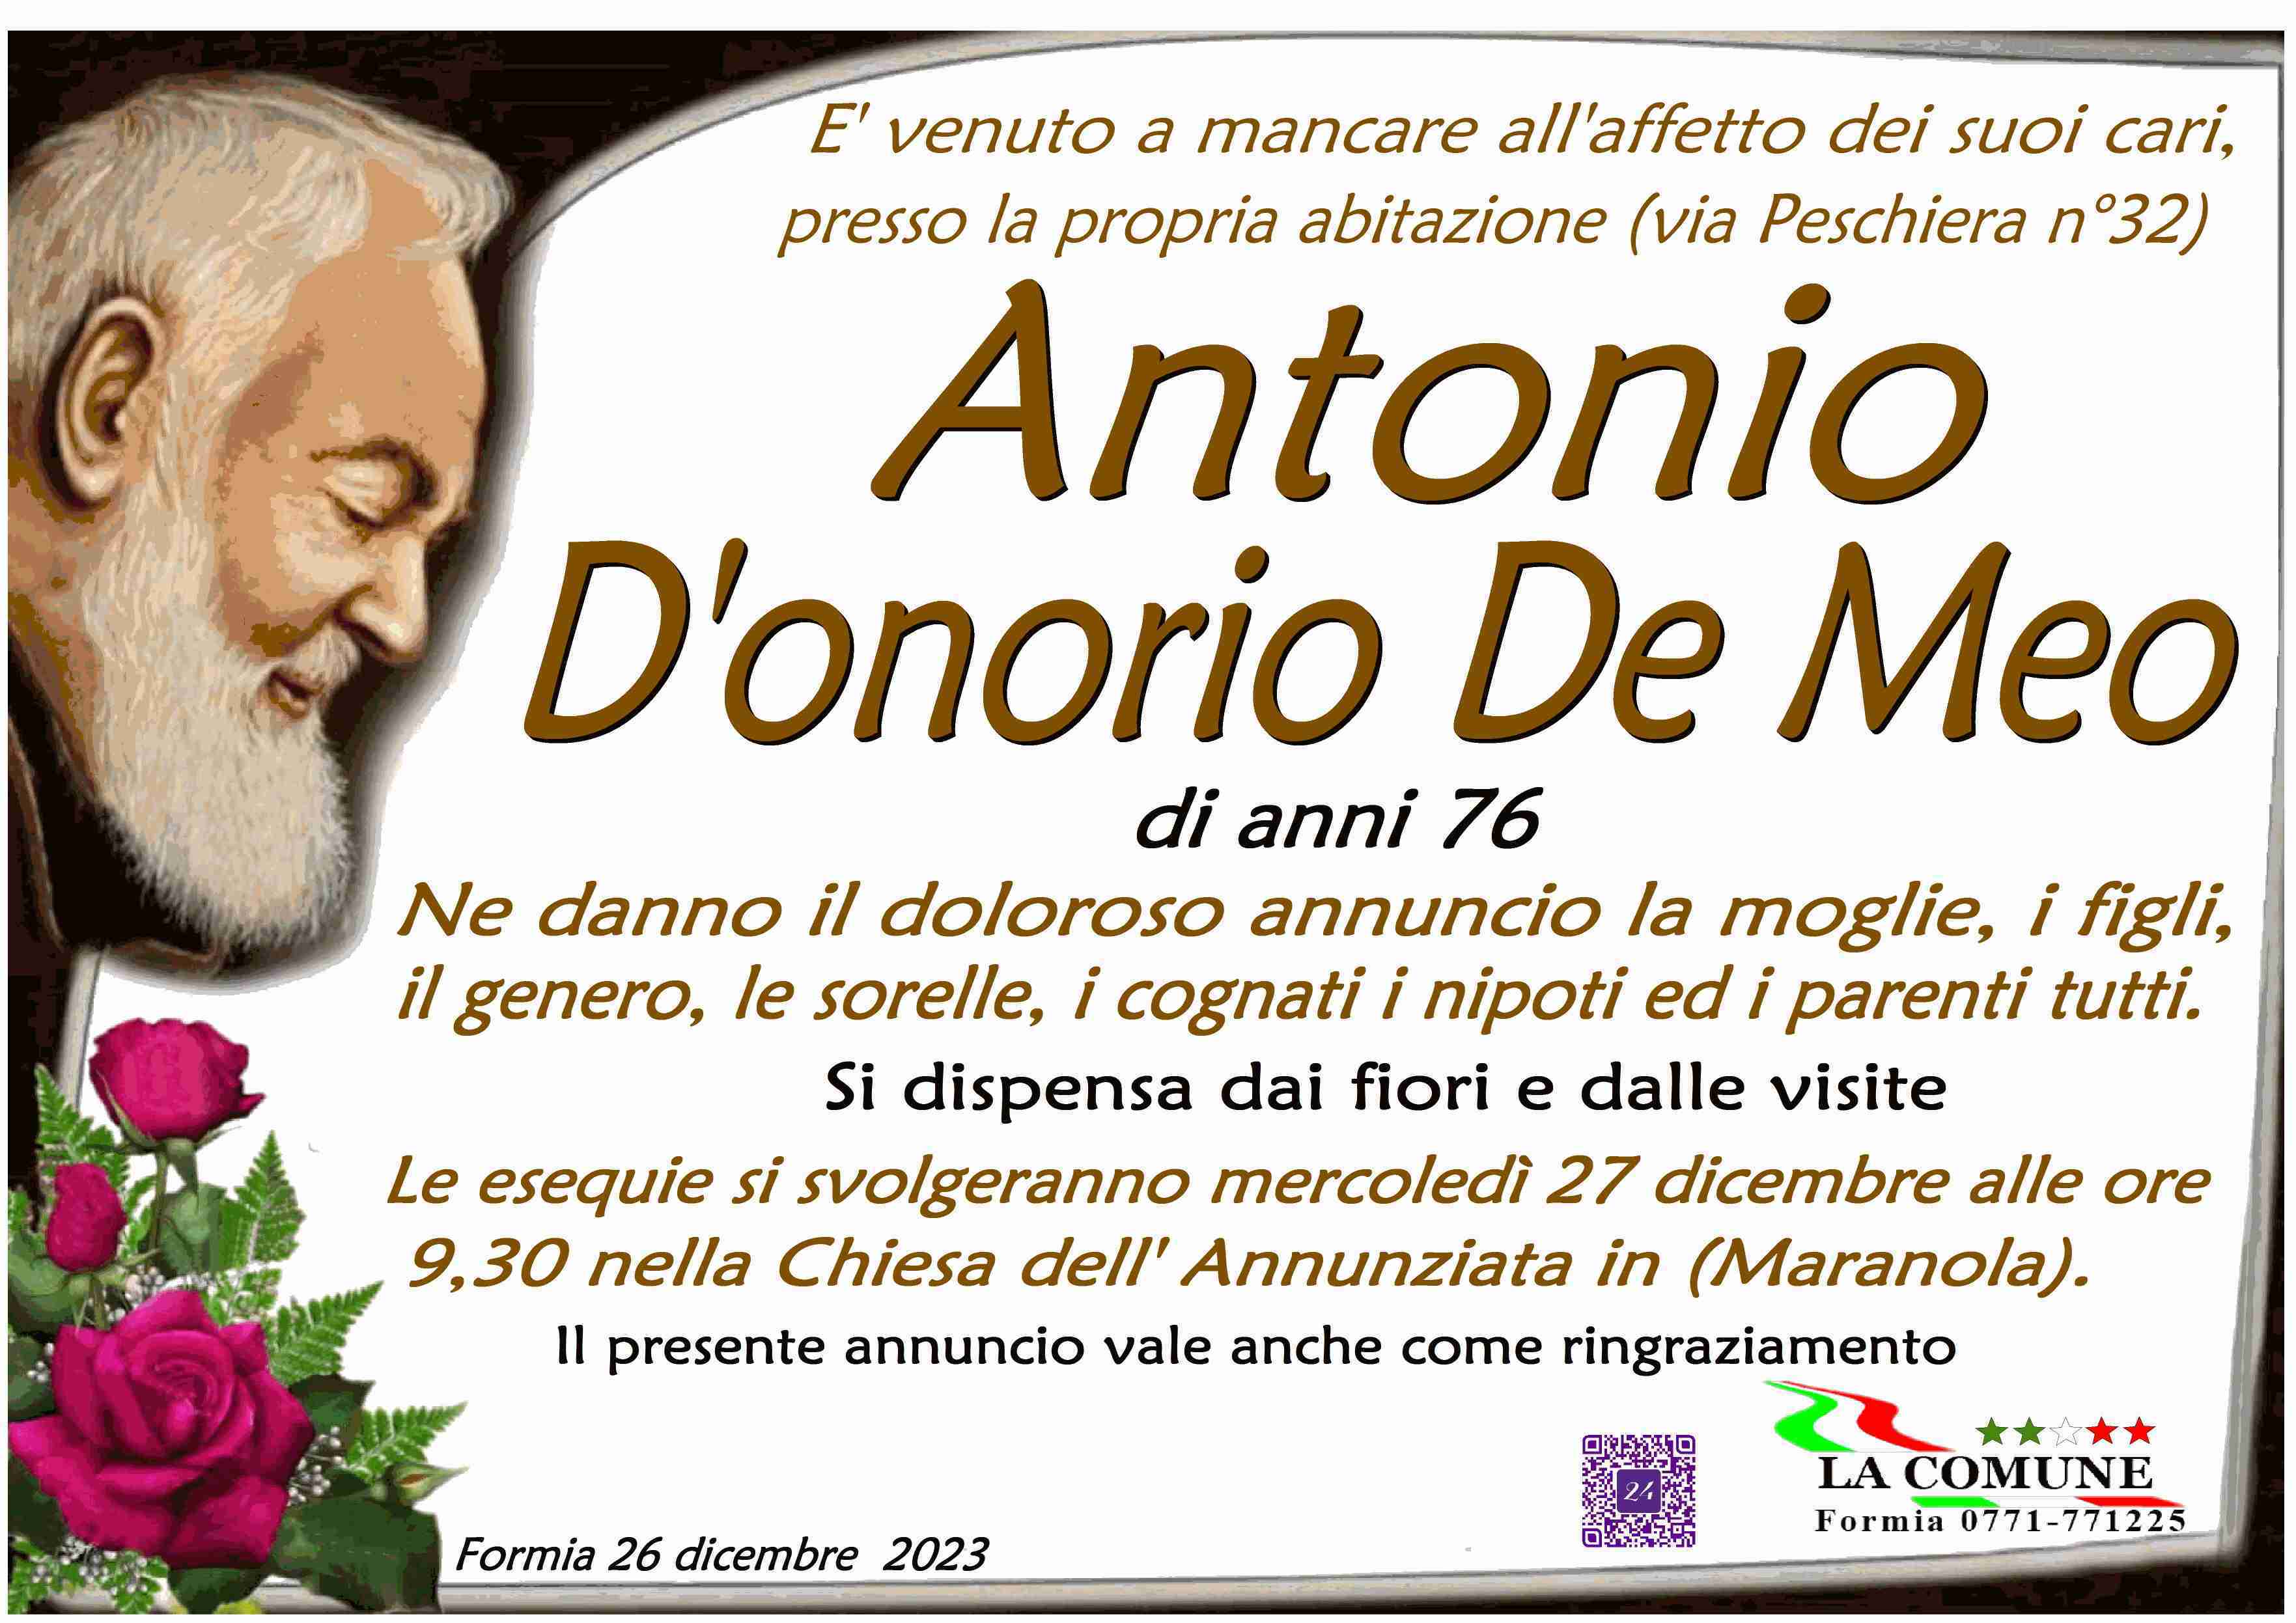 Antonio D'onorio De Meo